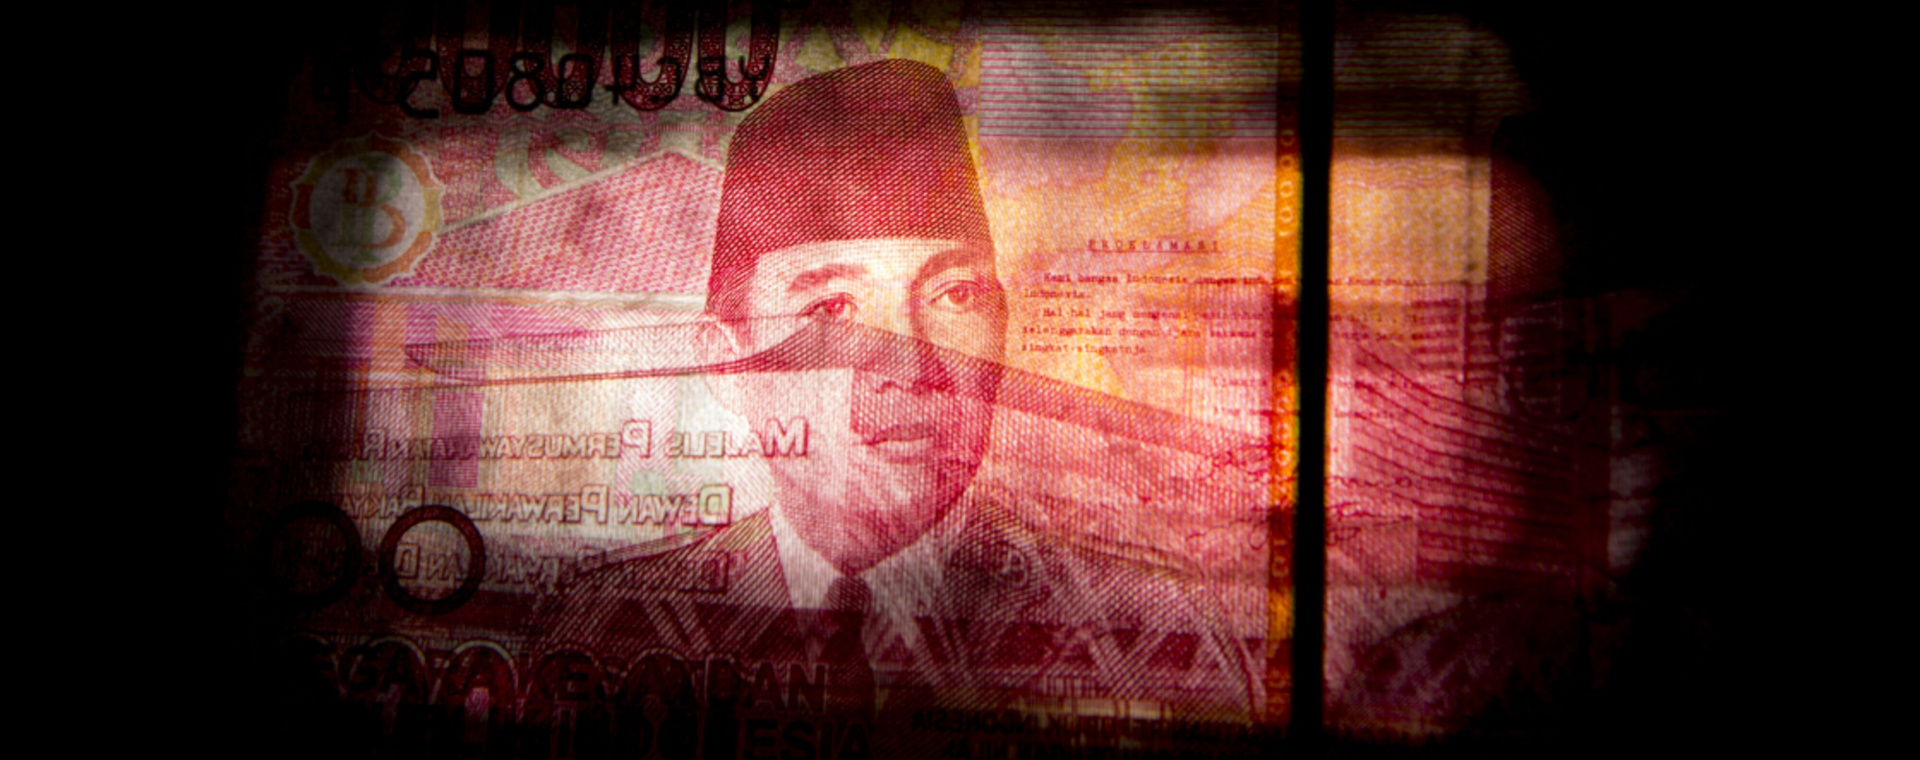 Potret wajah Mantan Presiden Sukarno dalam uang lembar Rp100.000./Bloomberg-Brent Lewin.